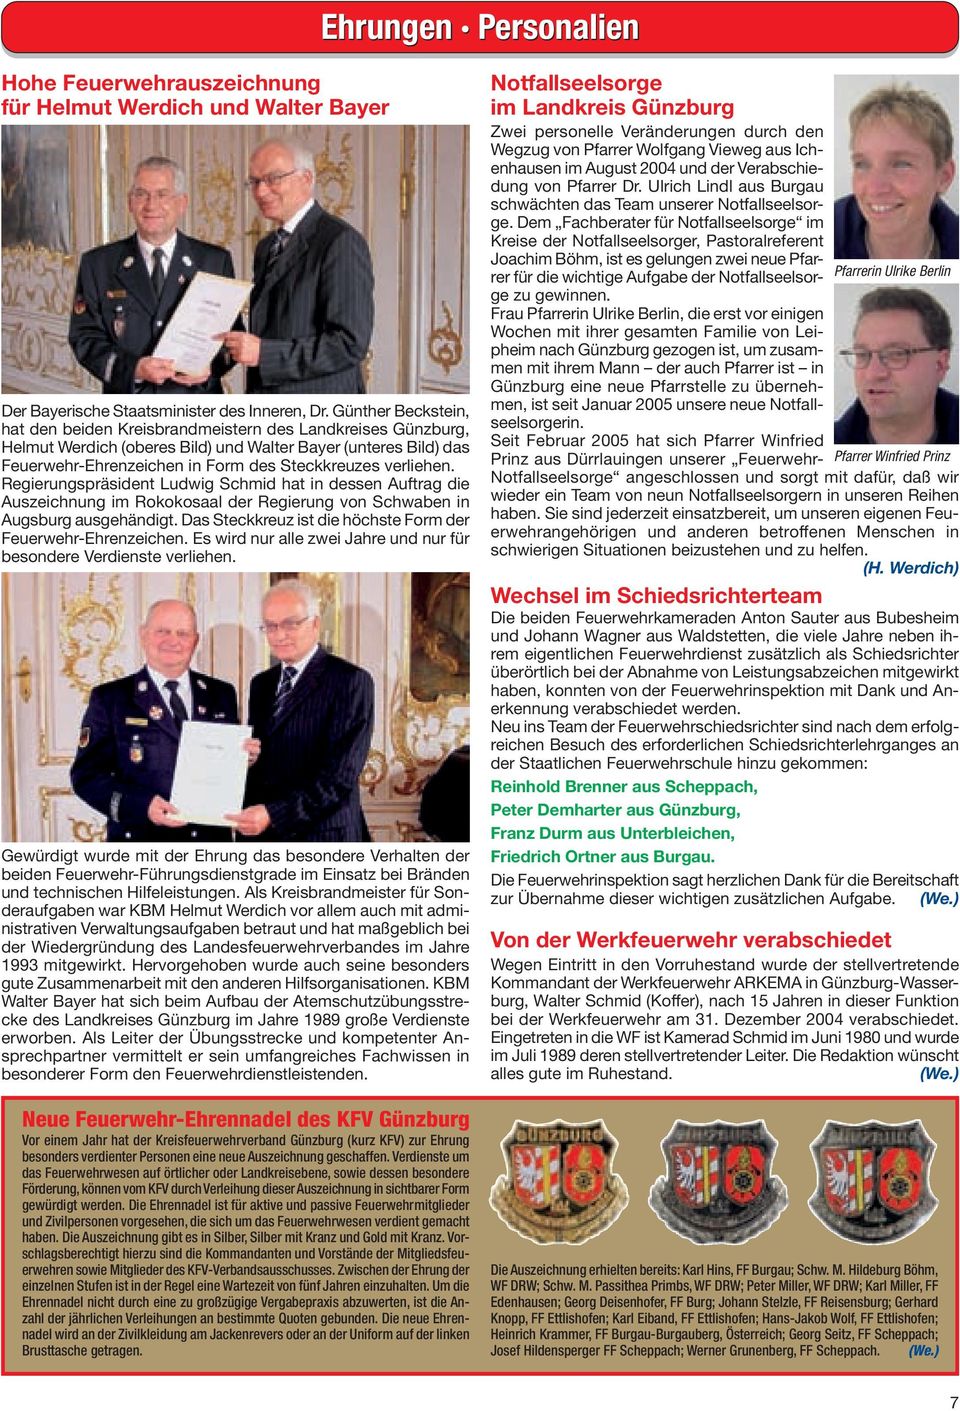 verliehen. Regierungspräsident Ludwig Schmid hat in dessen Auftrag die Auszeichnung im Rokokosaal der Regierung von Schwaben in Augsburg ausgehändigt.